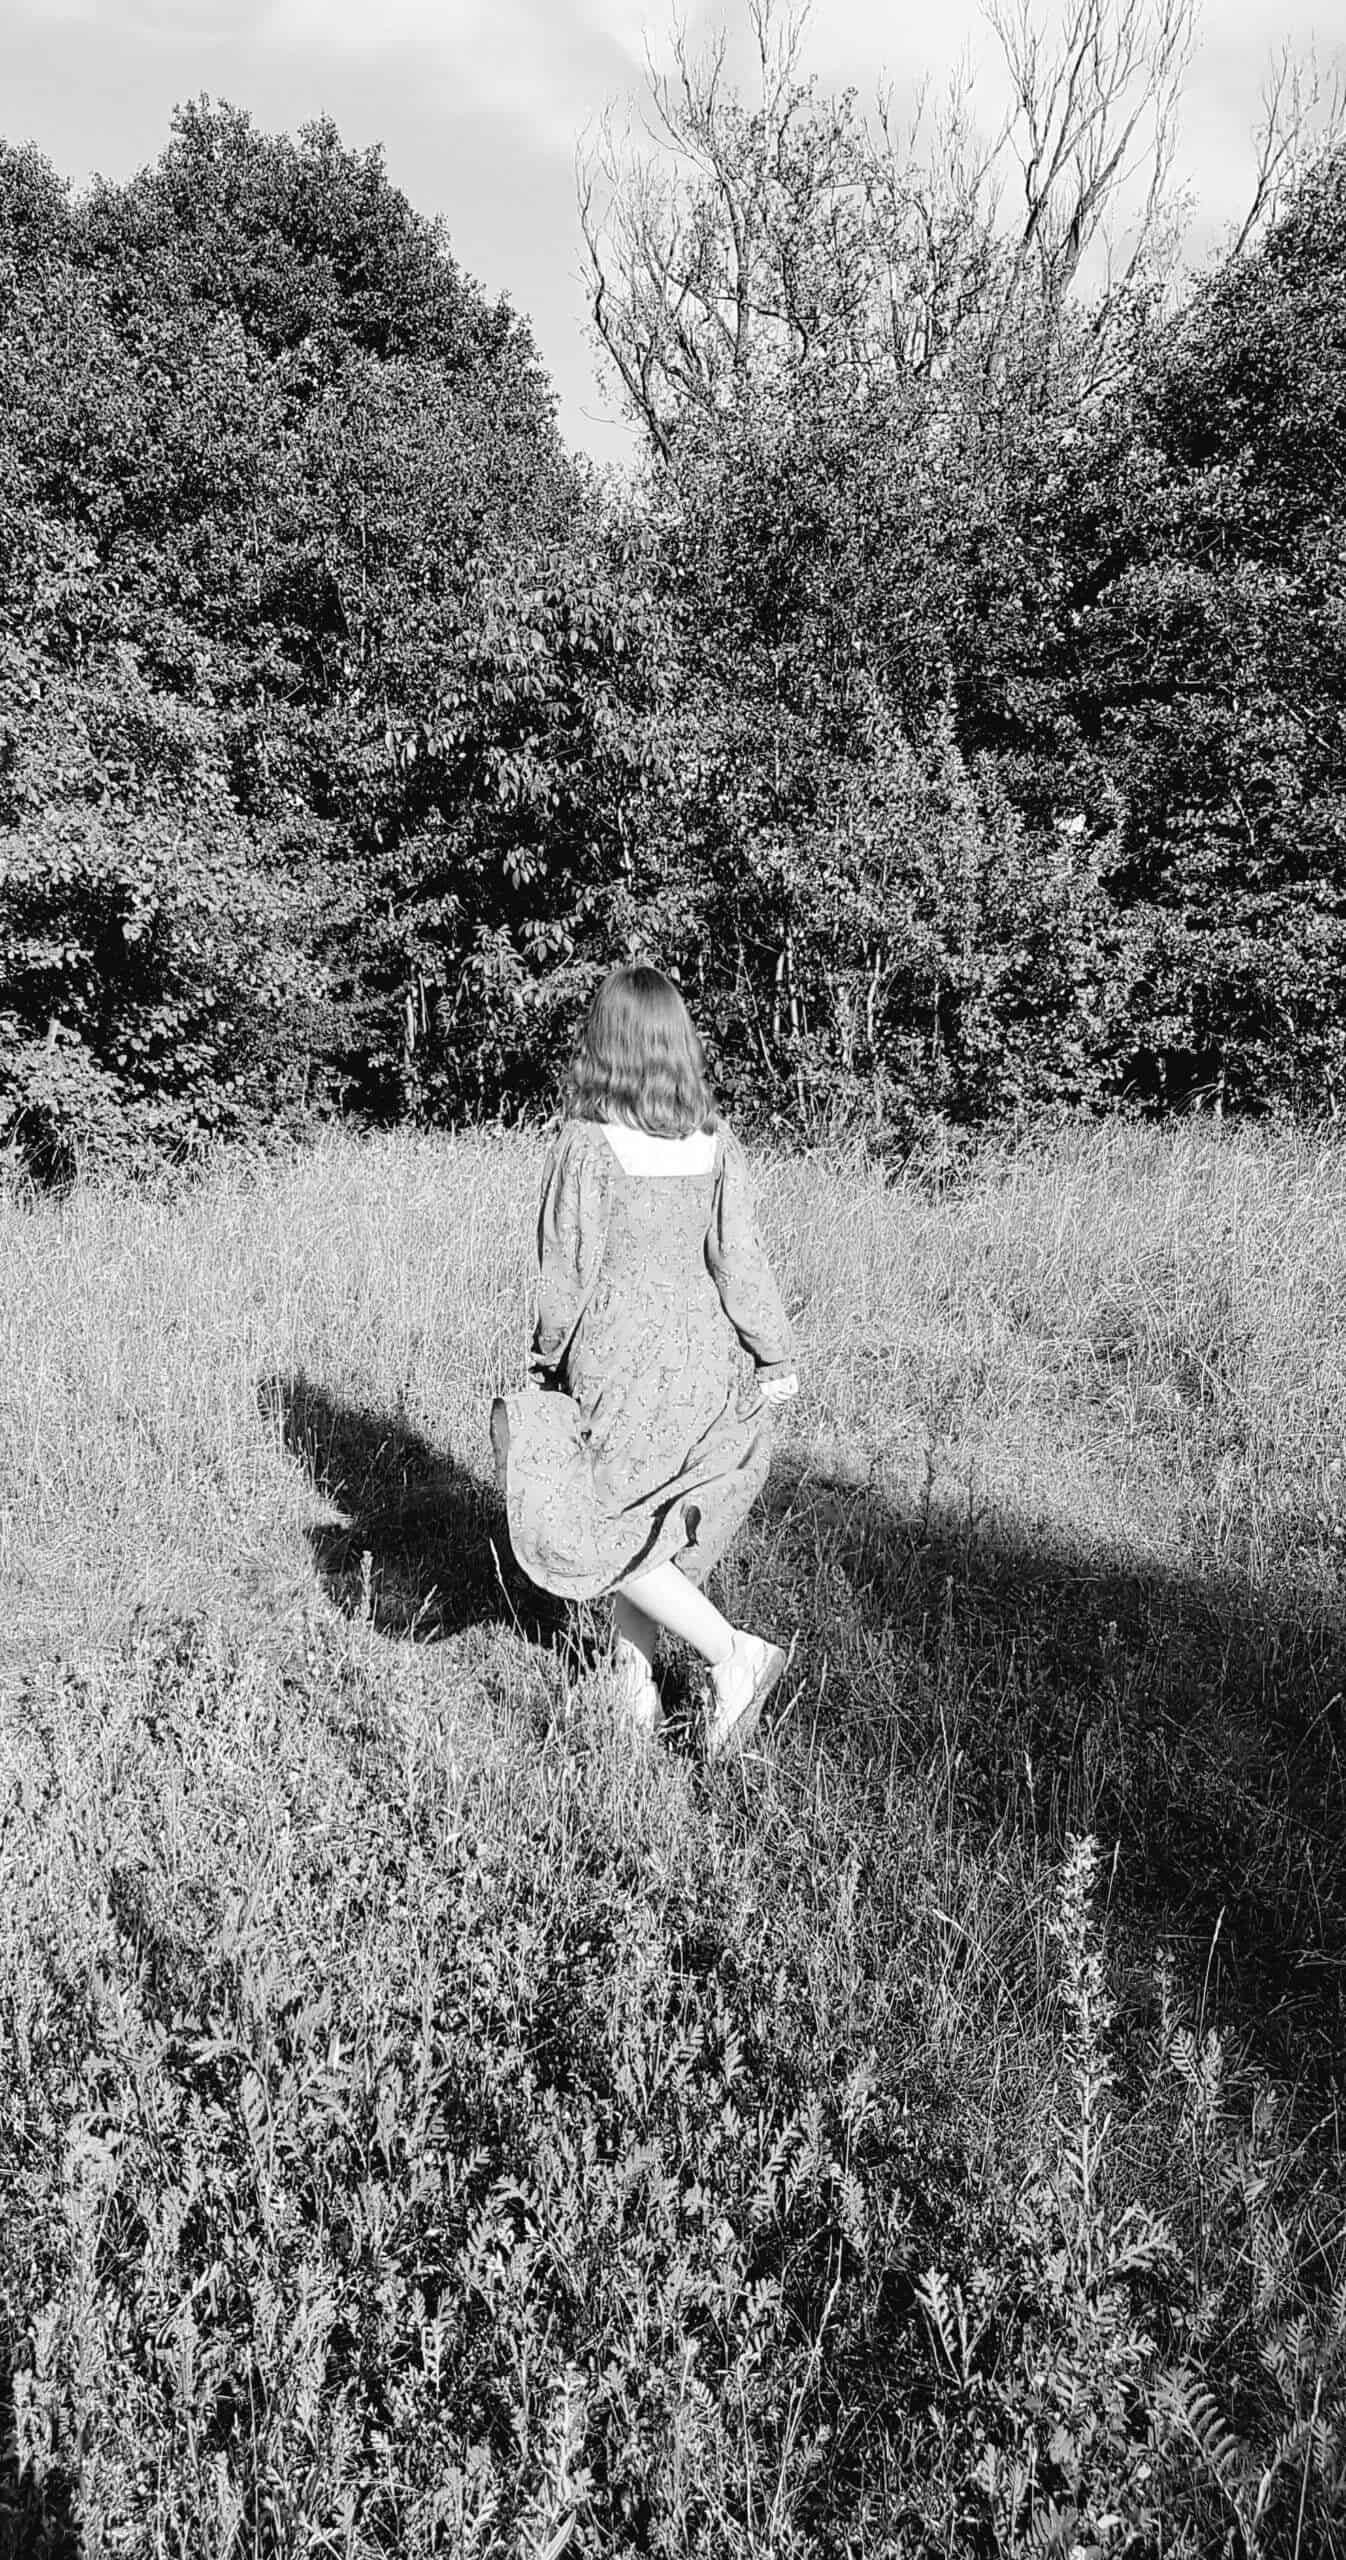 opowieści rodzinne - zdjęcie dziewczyny biegnącej przez łąkę, czarno - białe